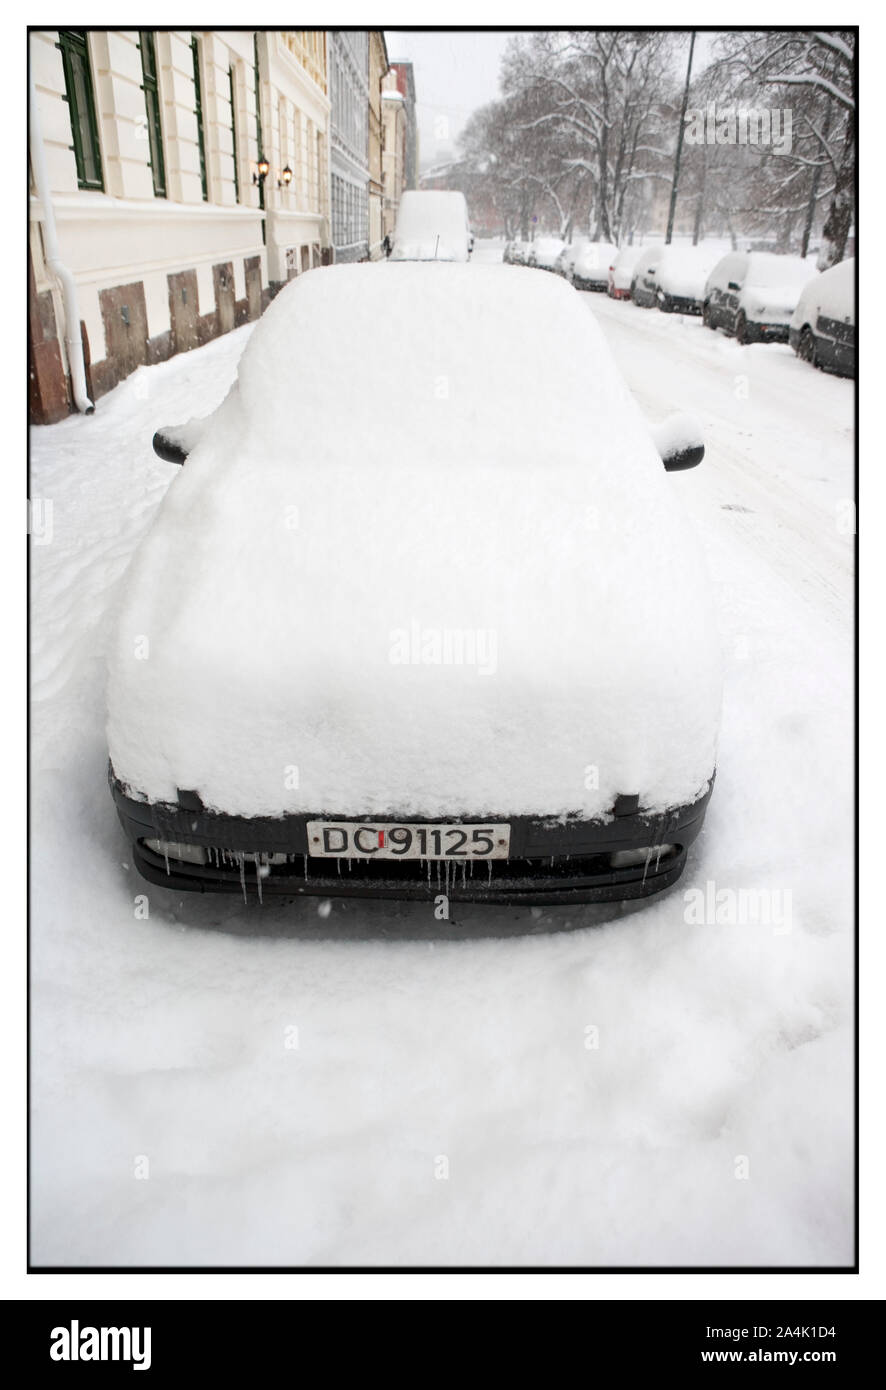 Auto parcheggiate in neve Foto Stock